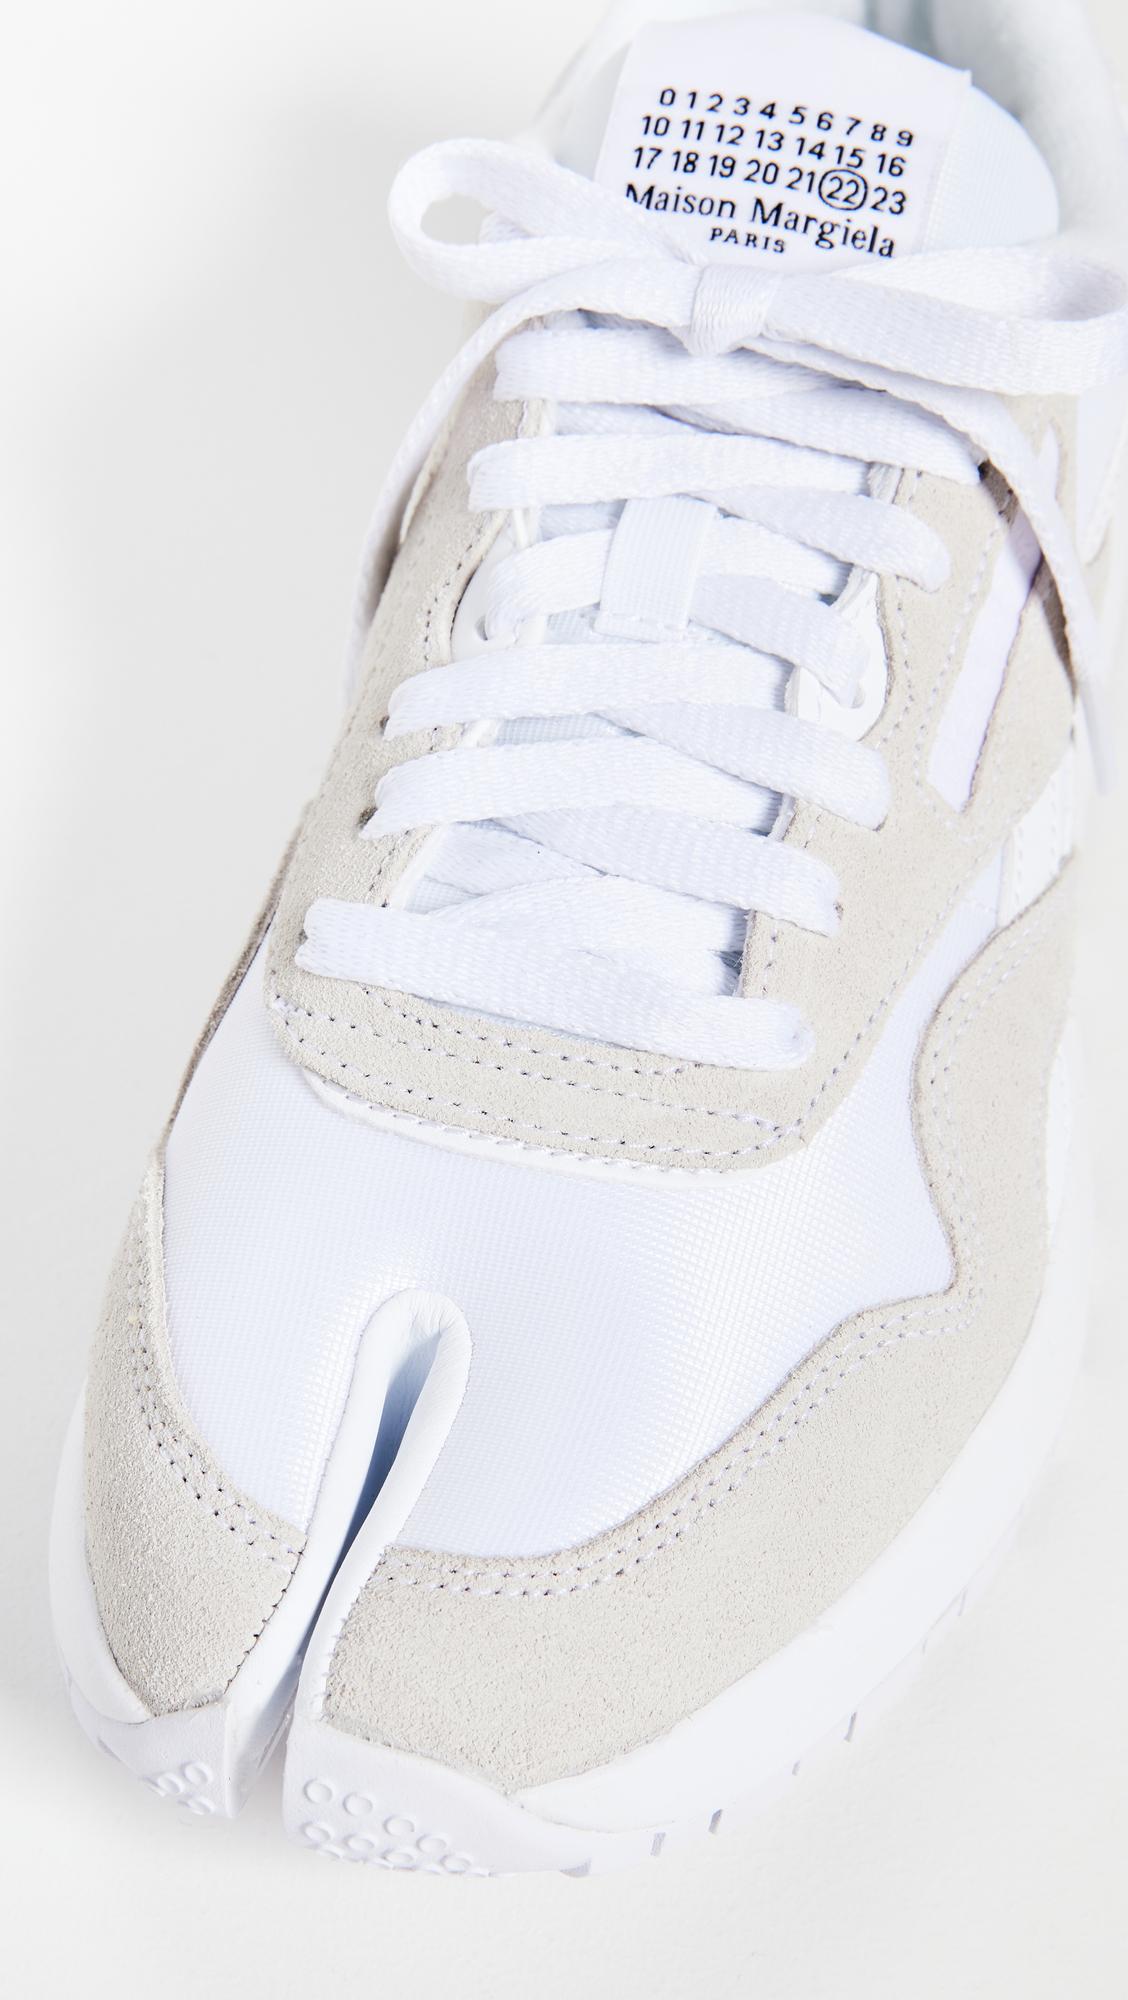 MAISON MARGIELA x REEBOK Project 0 Cl Nylon Sneakers in White | Lyst